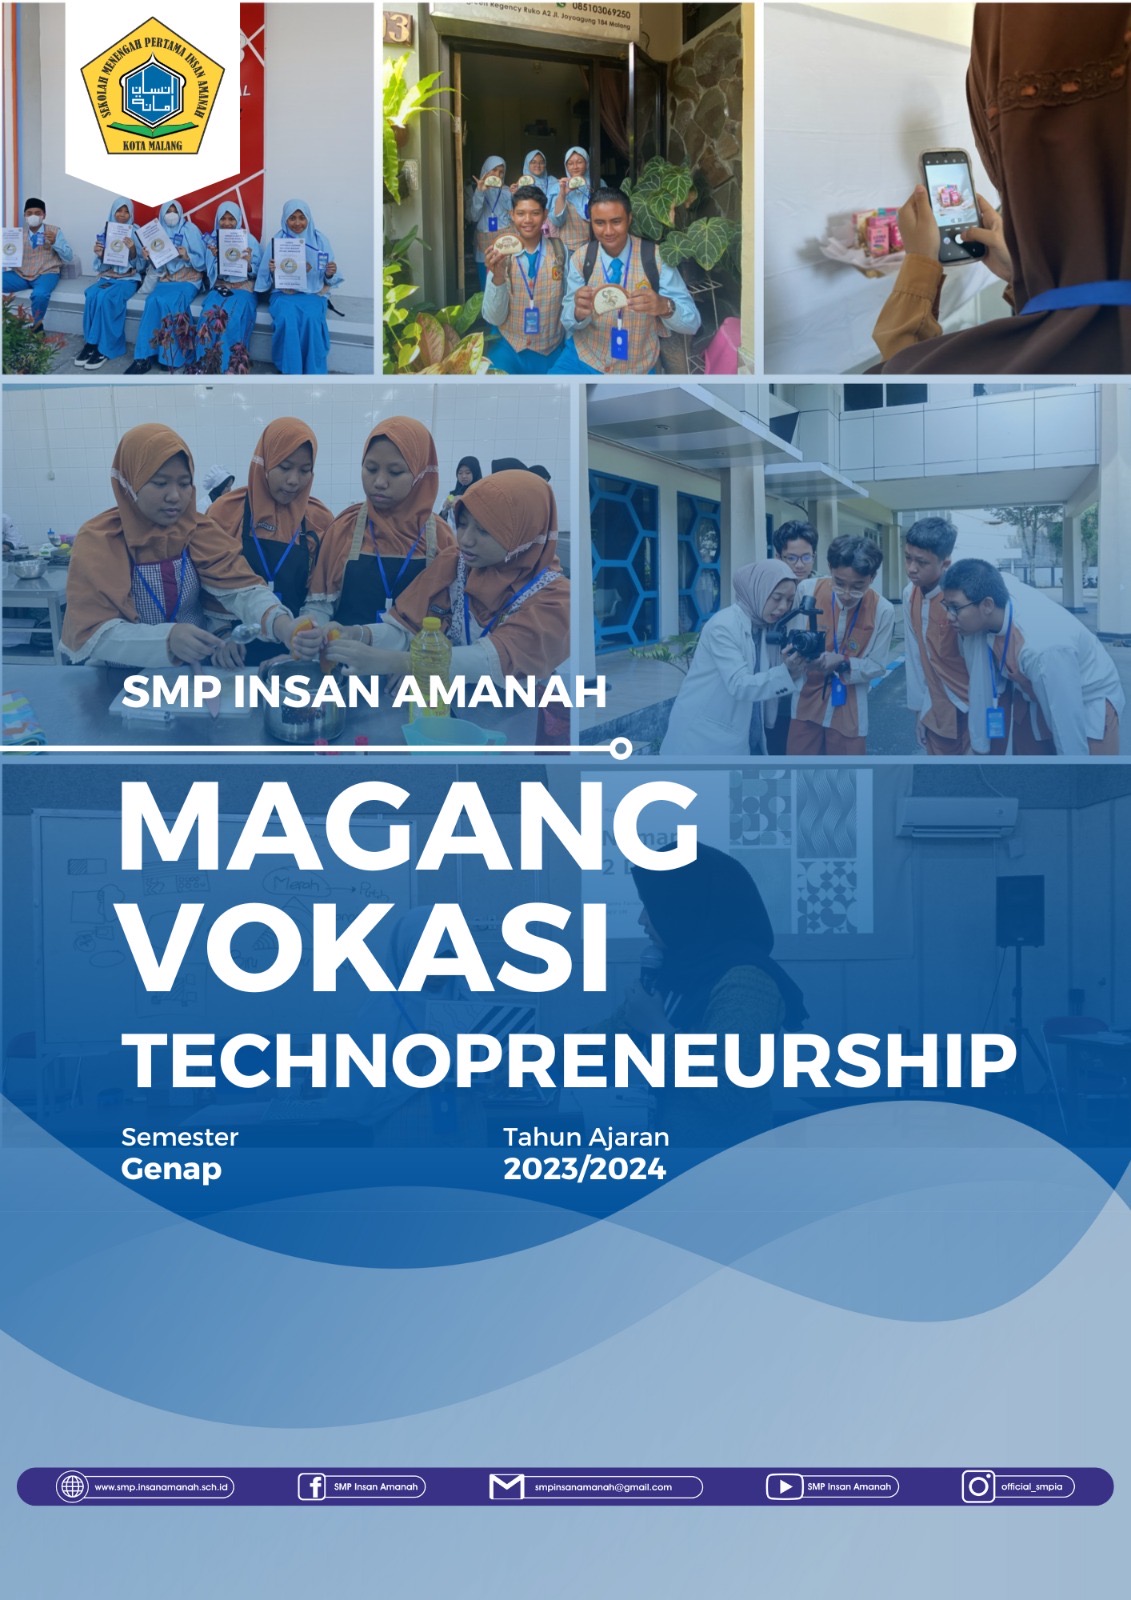 Magang Vokasi Technopreneurship bersama tutricrafts.id